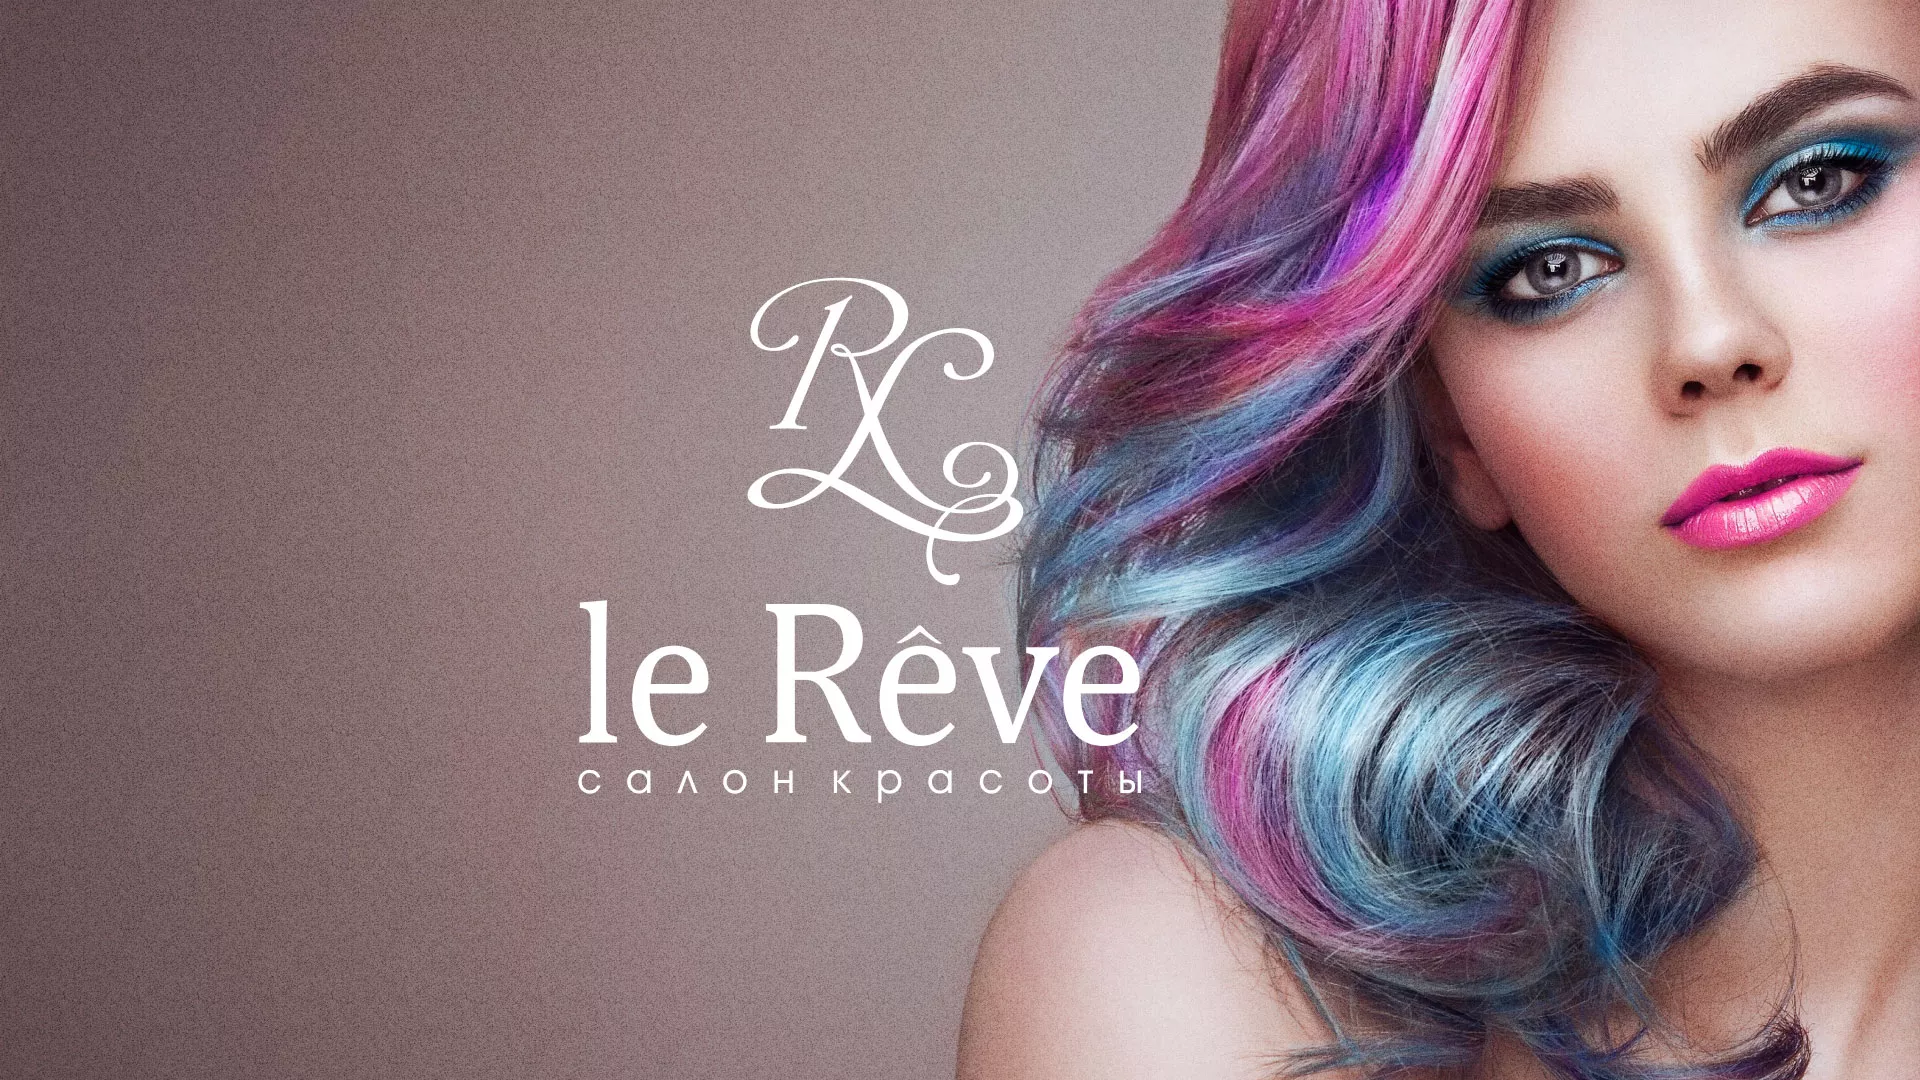 Создание сайта для салона красоты «Le Reve» в Липках